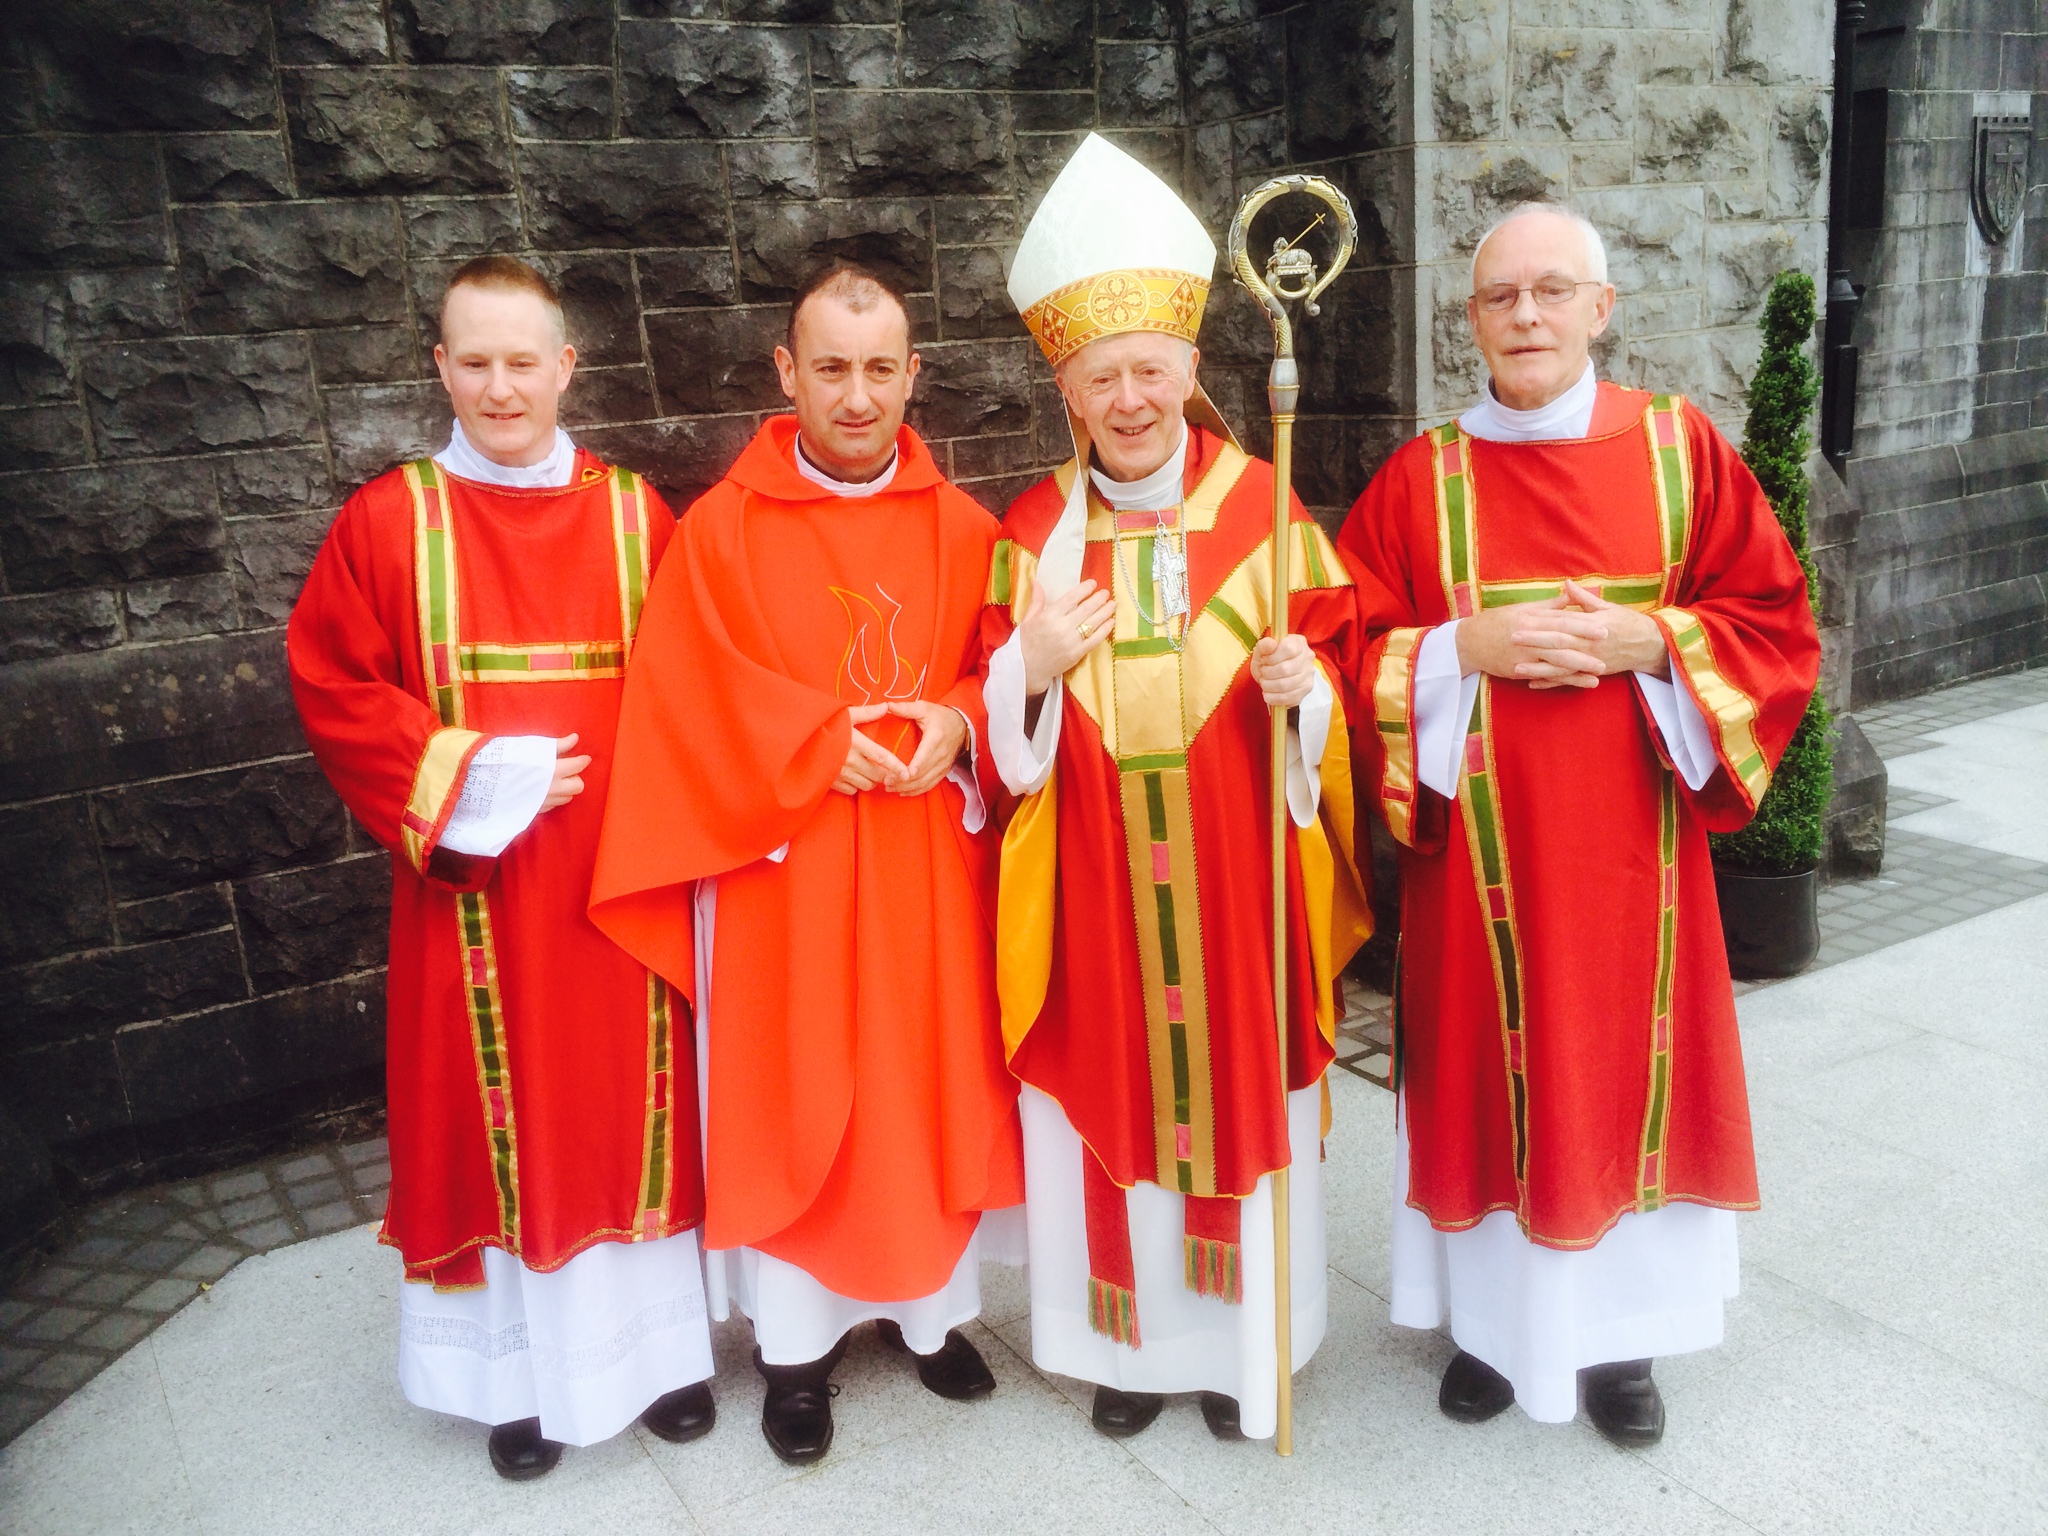 Pri est. Ирландцы католики. Deacons. Католические мальчики. Католические епископы Англии и Уэльса.